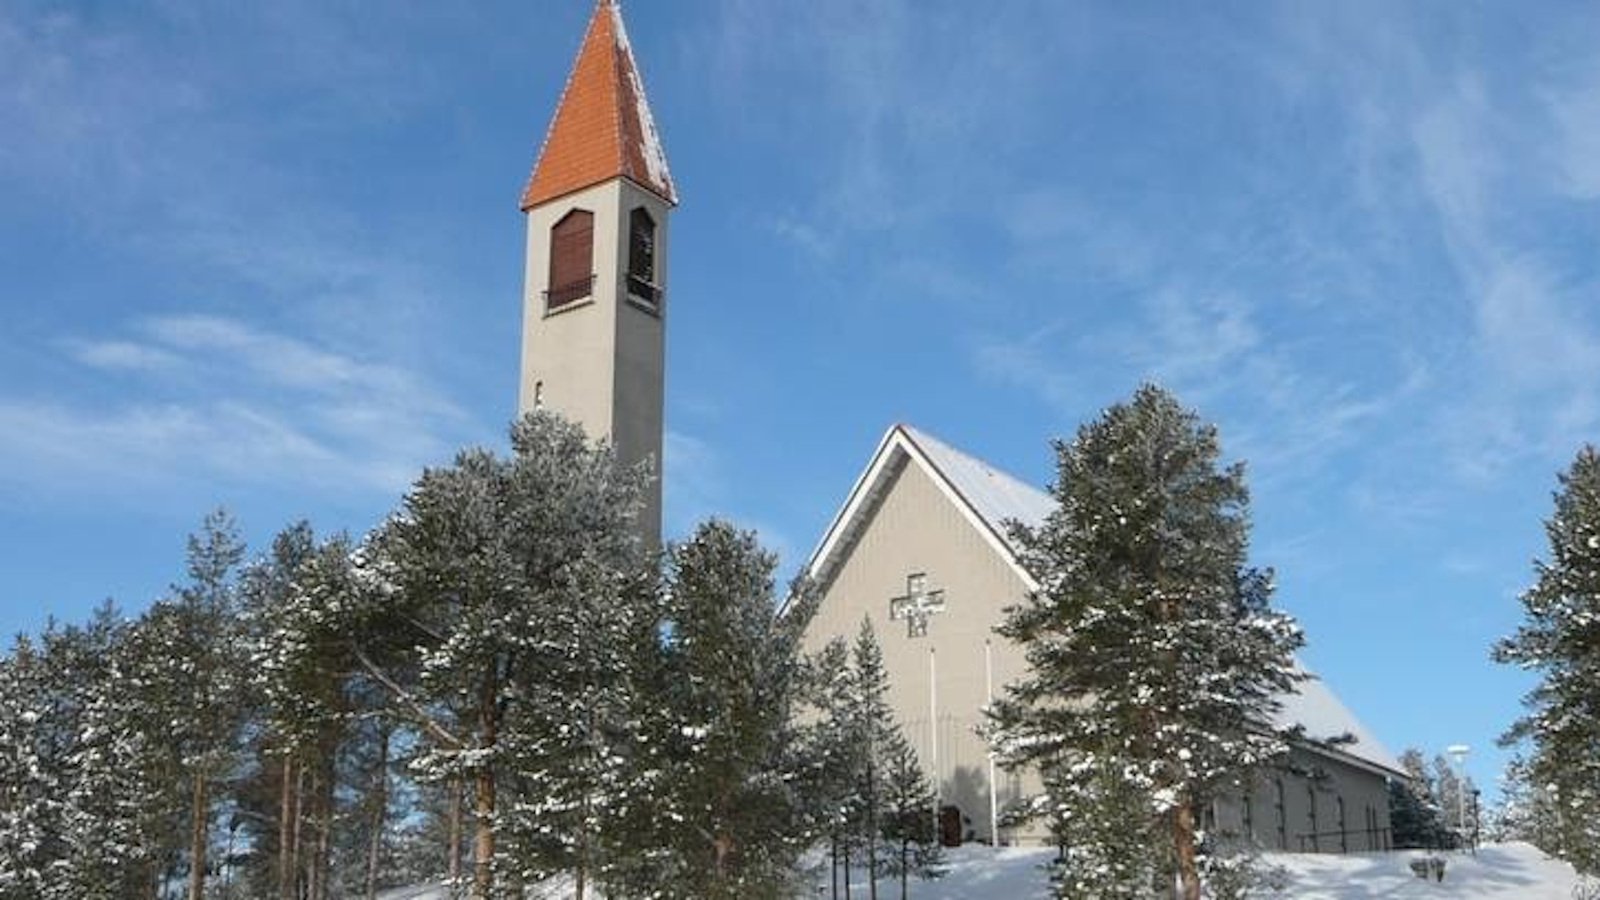 Kuvassa on Enontekiön kirkko, joka on vaalea kivikirkko ja päältä rapattu.